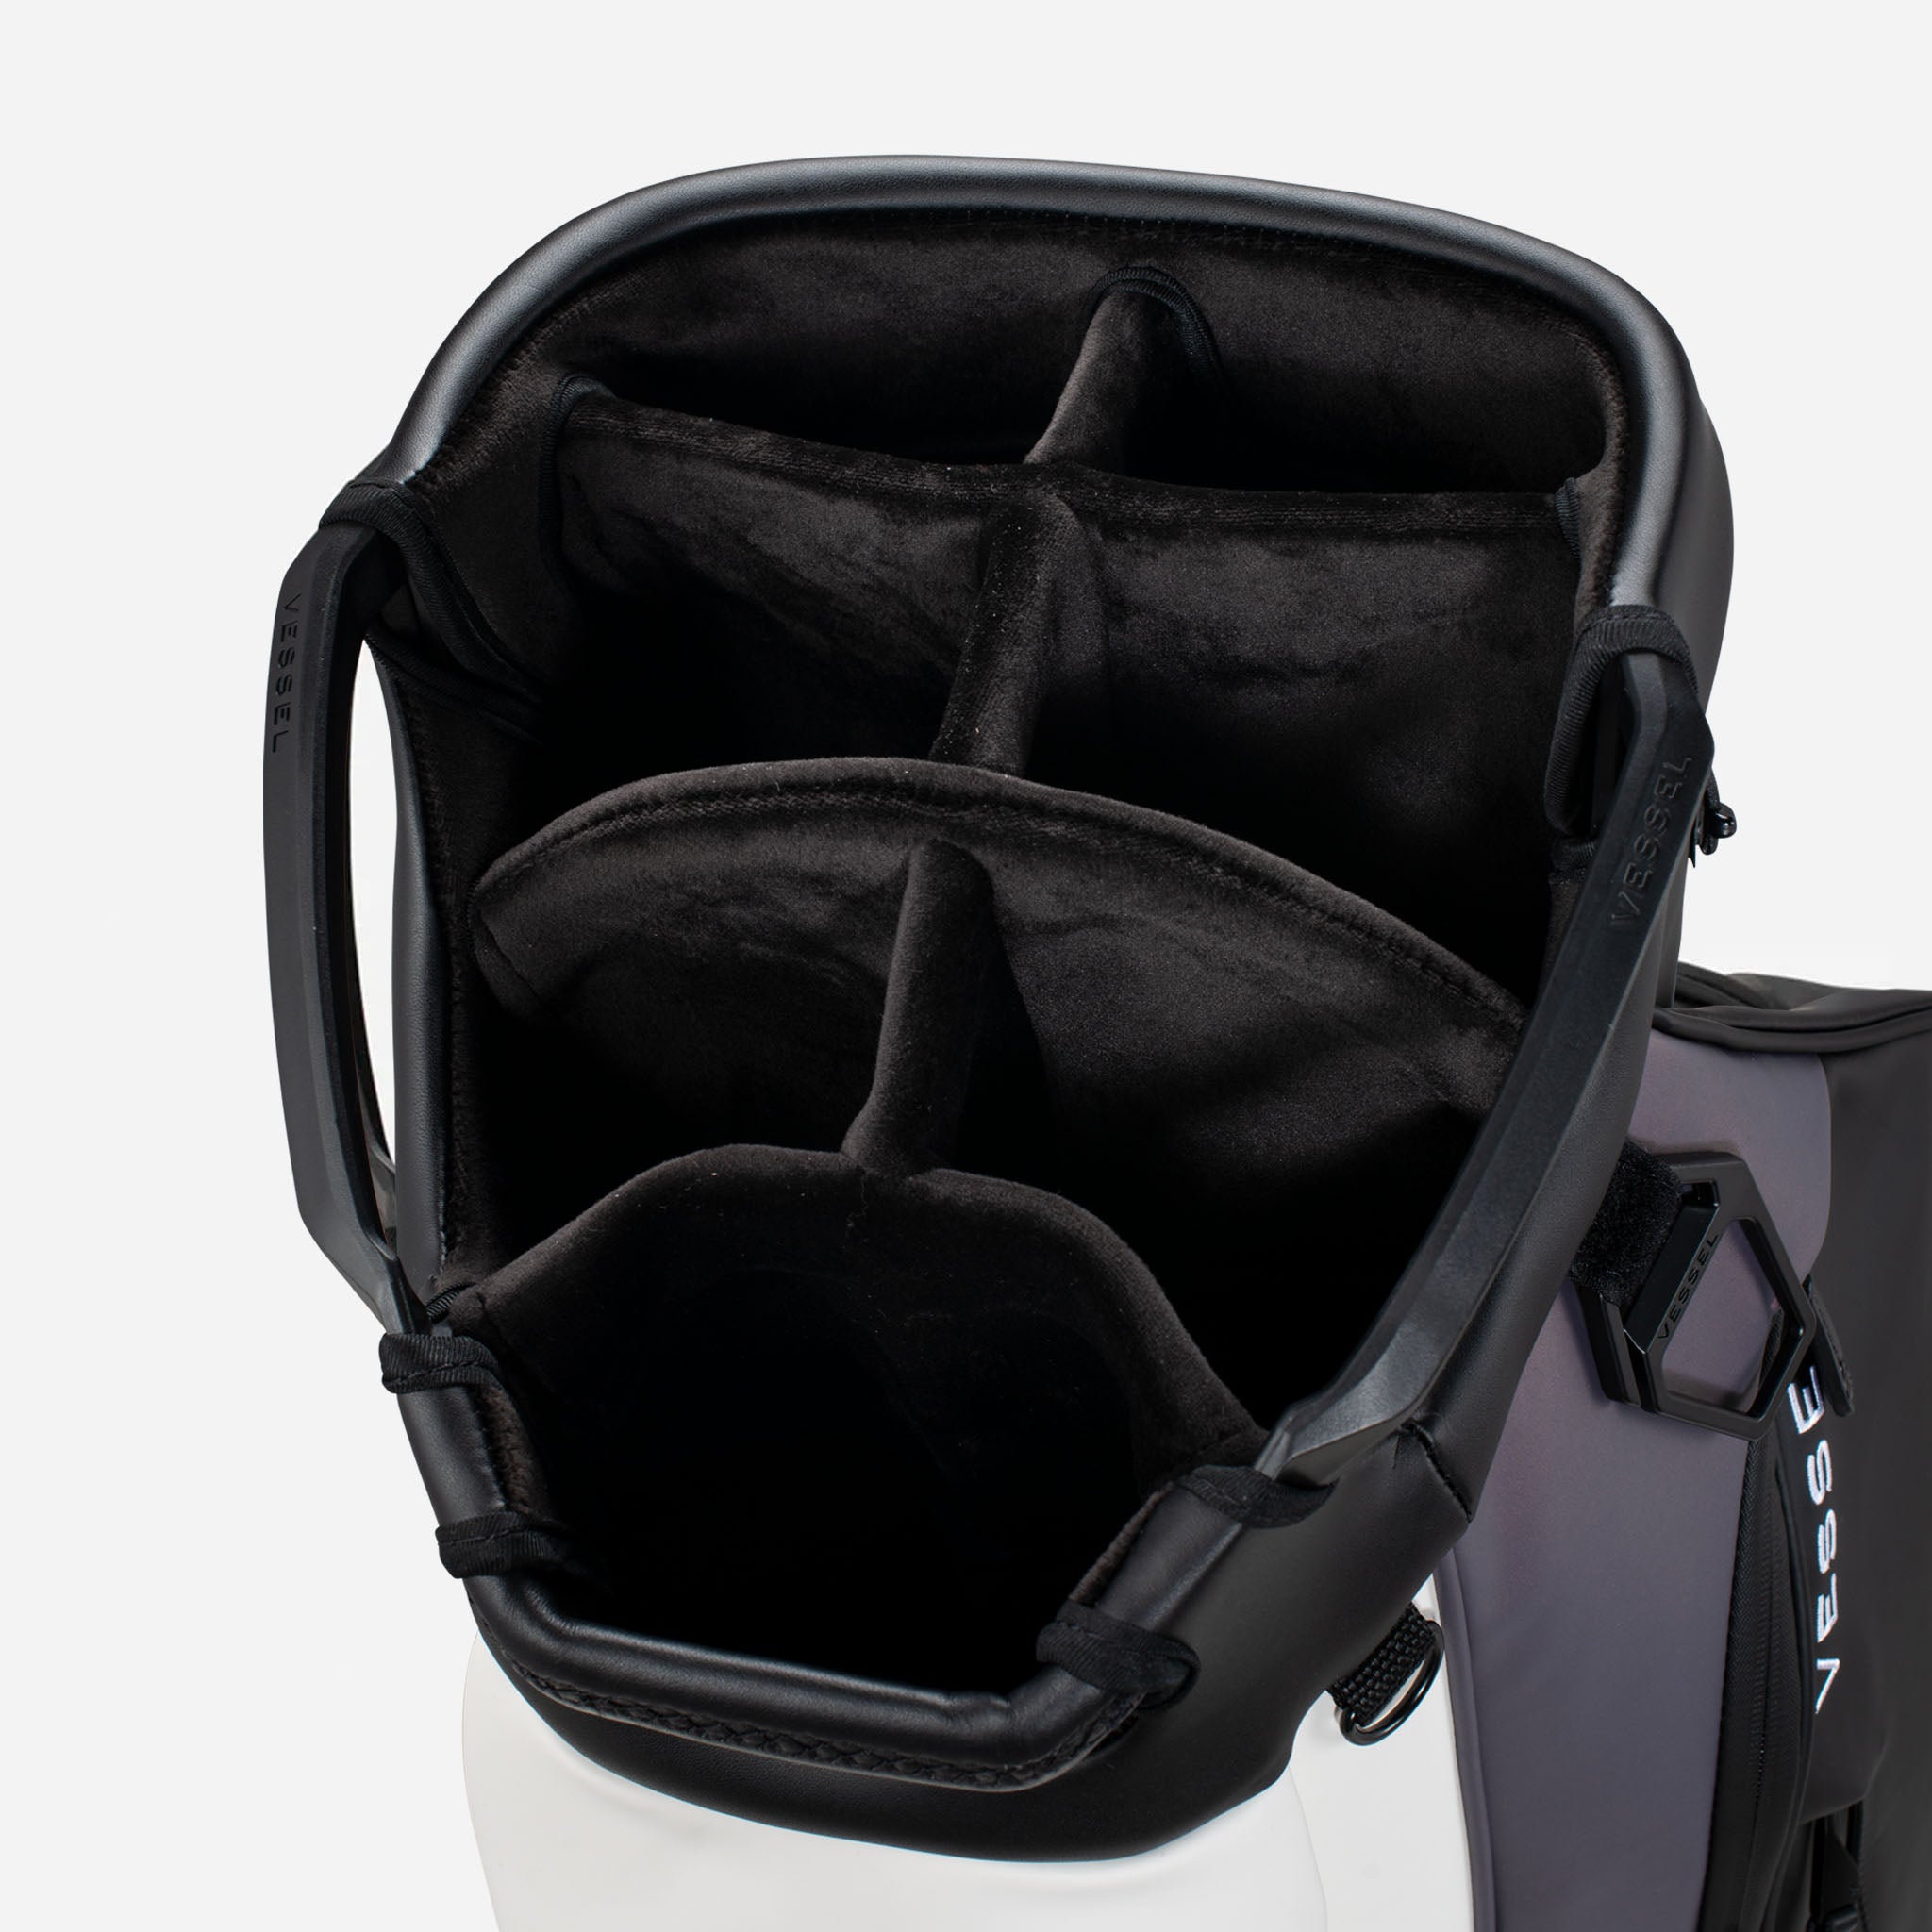 Vessel Lux 14-Way Cart Bag